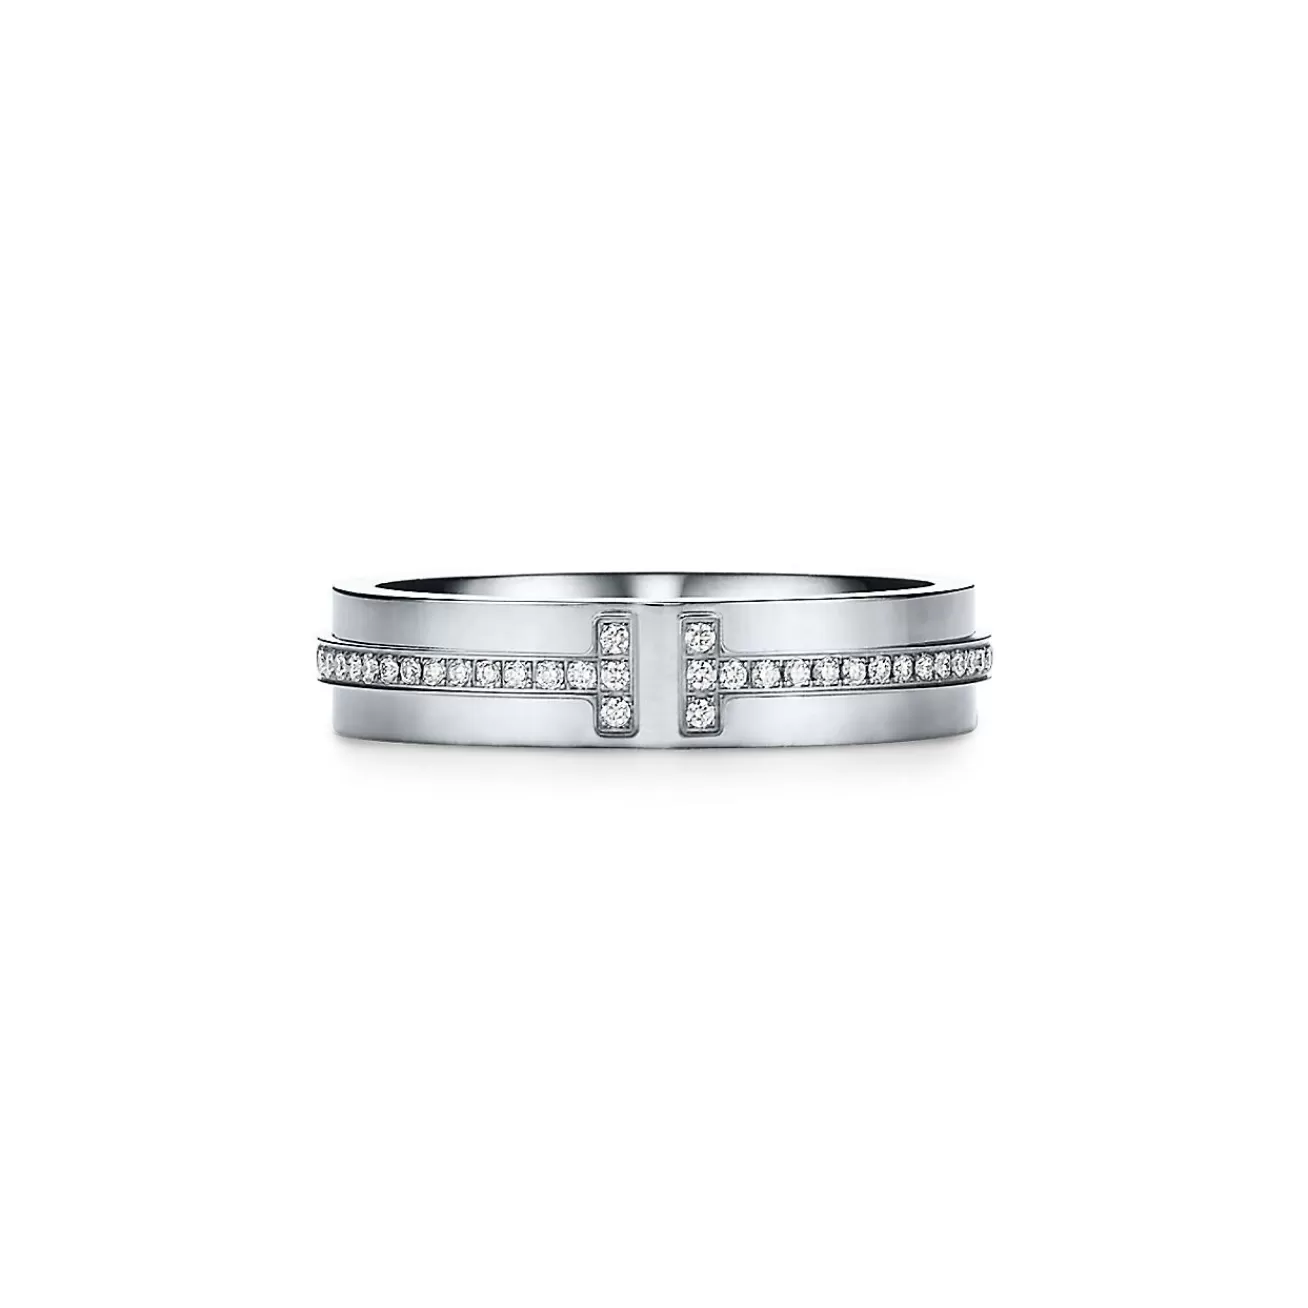 Tiffany & Co. Tiffany T narrow diamond ring in 18k white gold, 4.5 mm wide. | ^Women Rings | Men's Jewelry